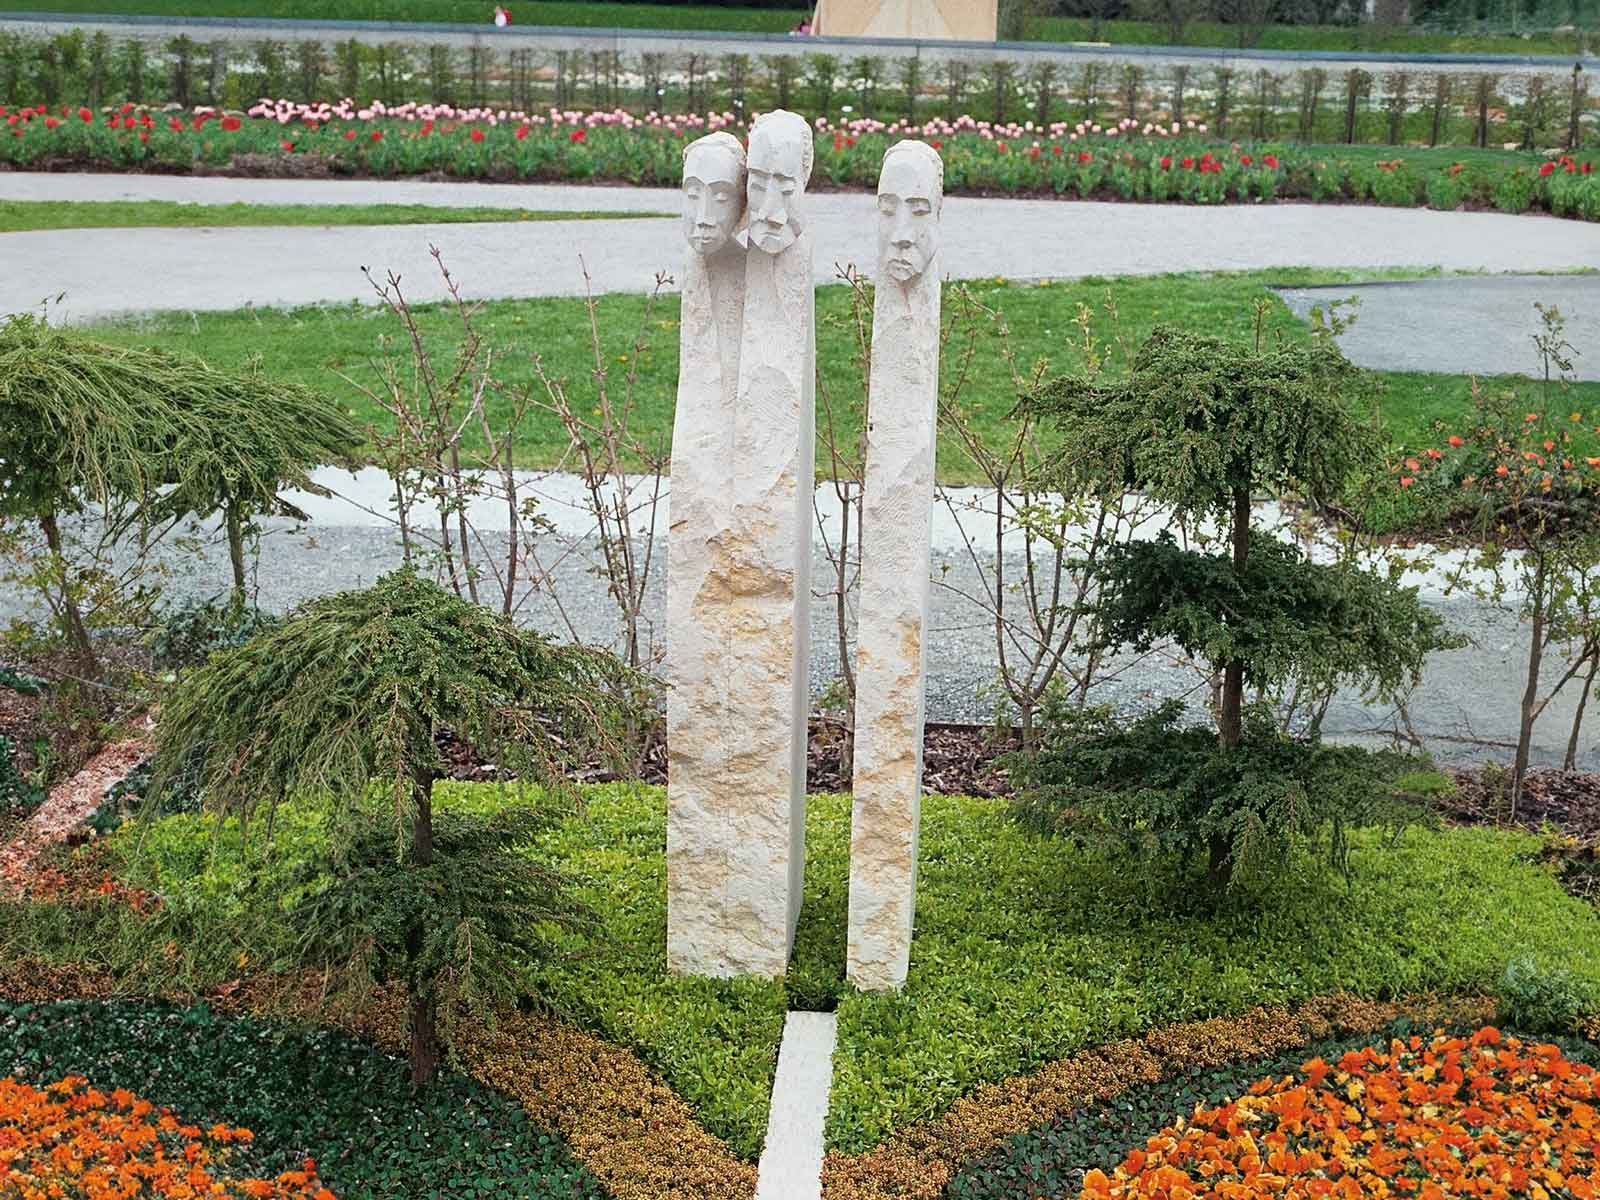 Grabstein aus drei Säulen, die jeweils eien Person symbolisieren. Es sind grob behandelte Steine mit oben eingearbeiteten Köpfen.